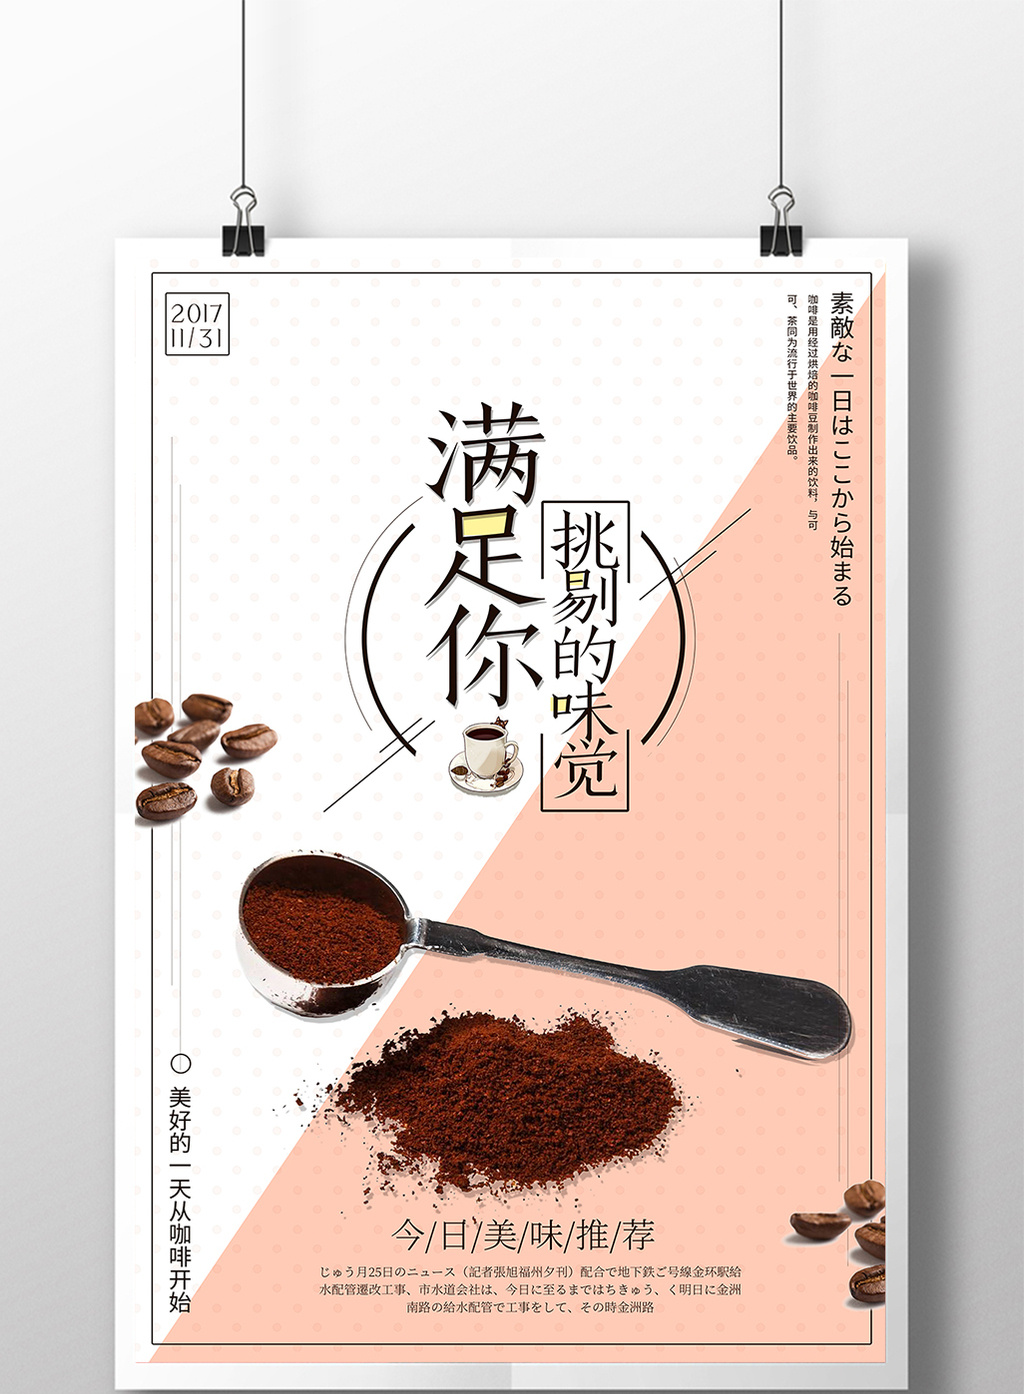 满足你挑剔的味觉咖啡海报设计素材免费下载,本次作品主题是广告设计